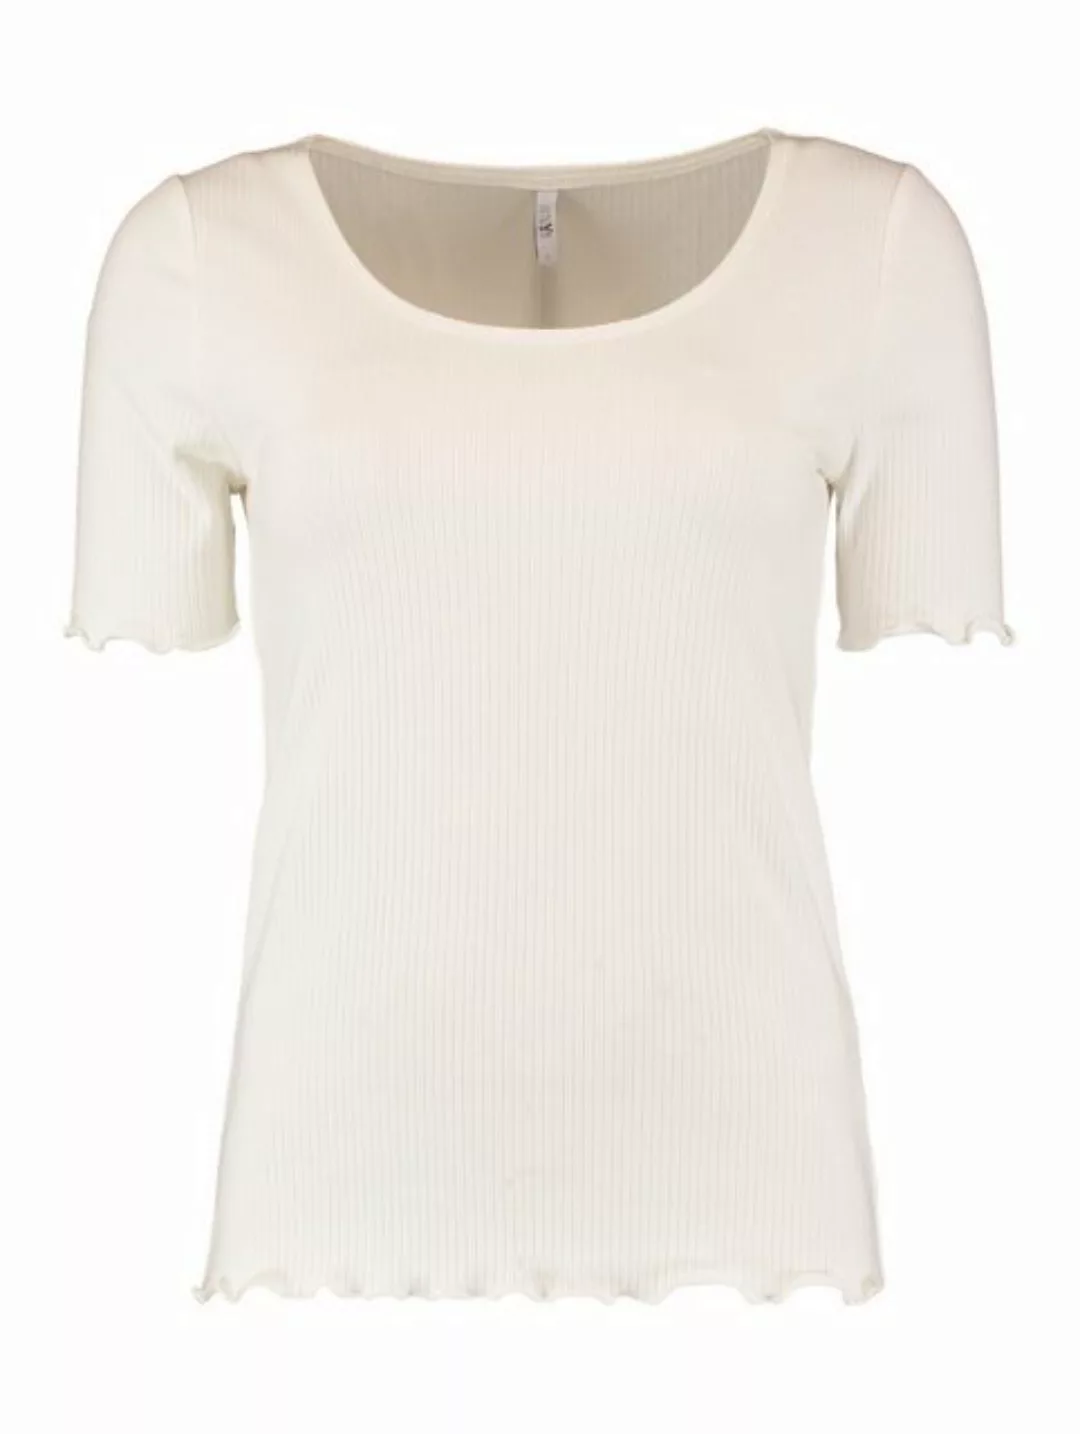 HaILY’S T-Shirt Top Halbarm Shirt Gerippt Rundhals Oberteil 7374 in Weiß günstig online kaufen